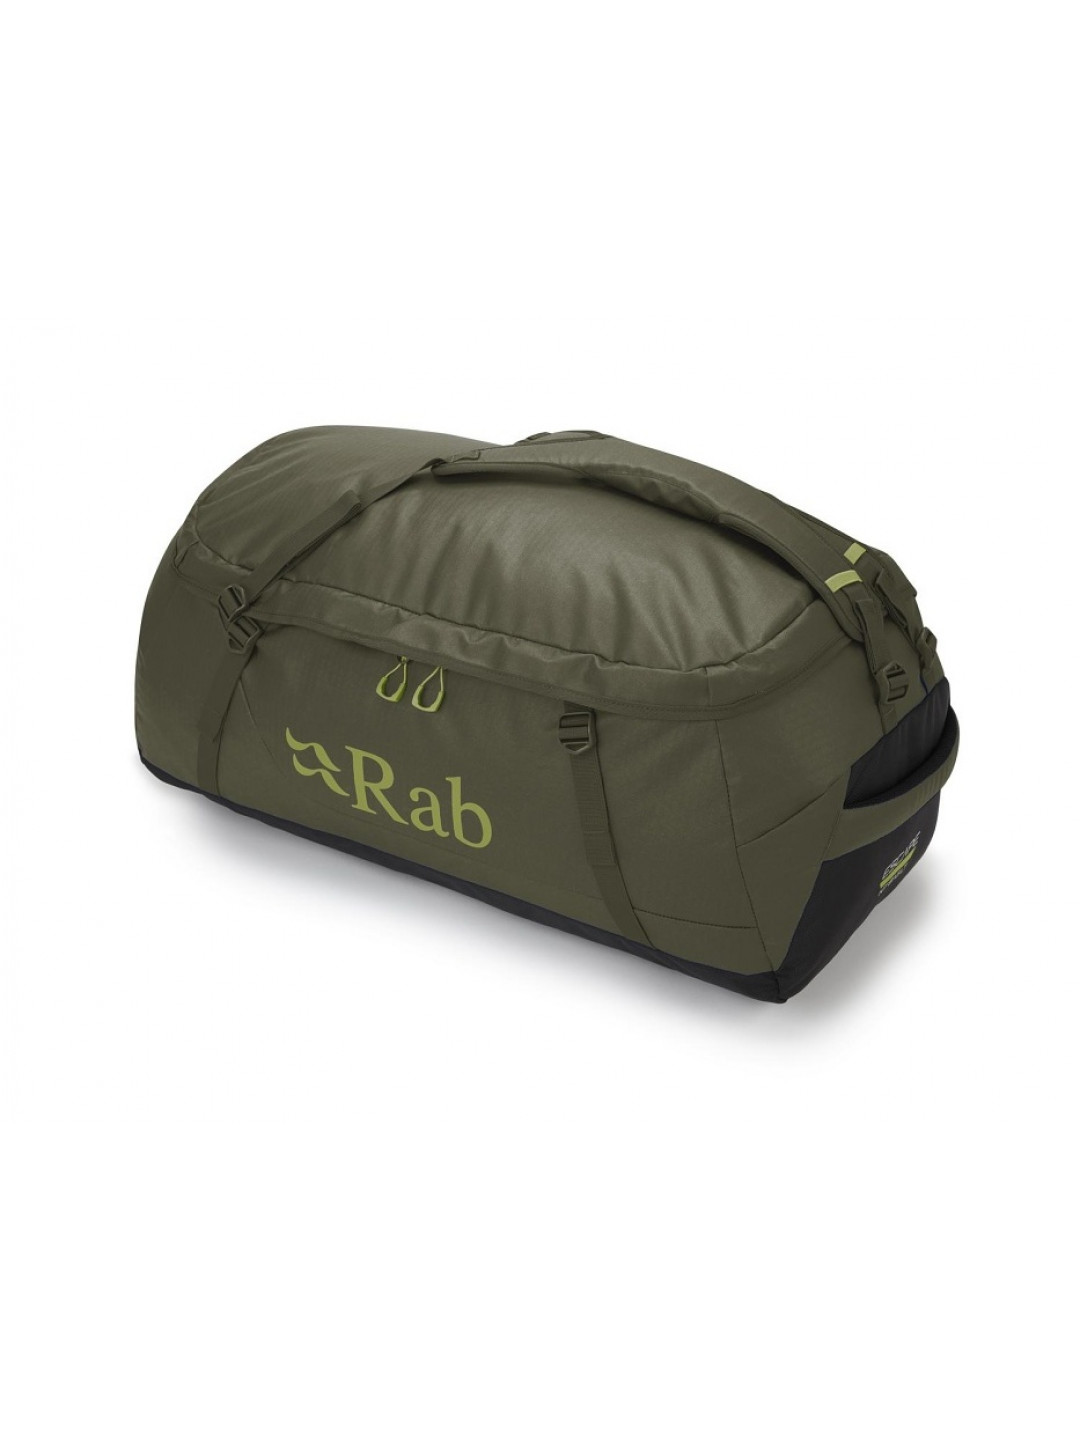 Rab Escape Kit Bag LT 30 Army